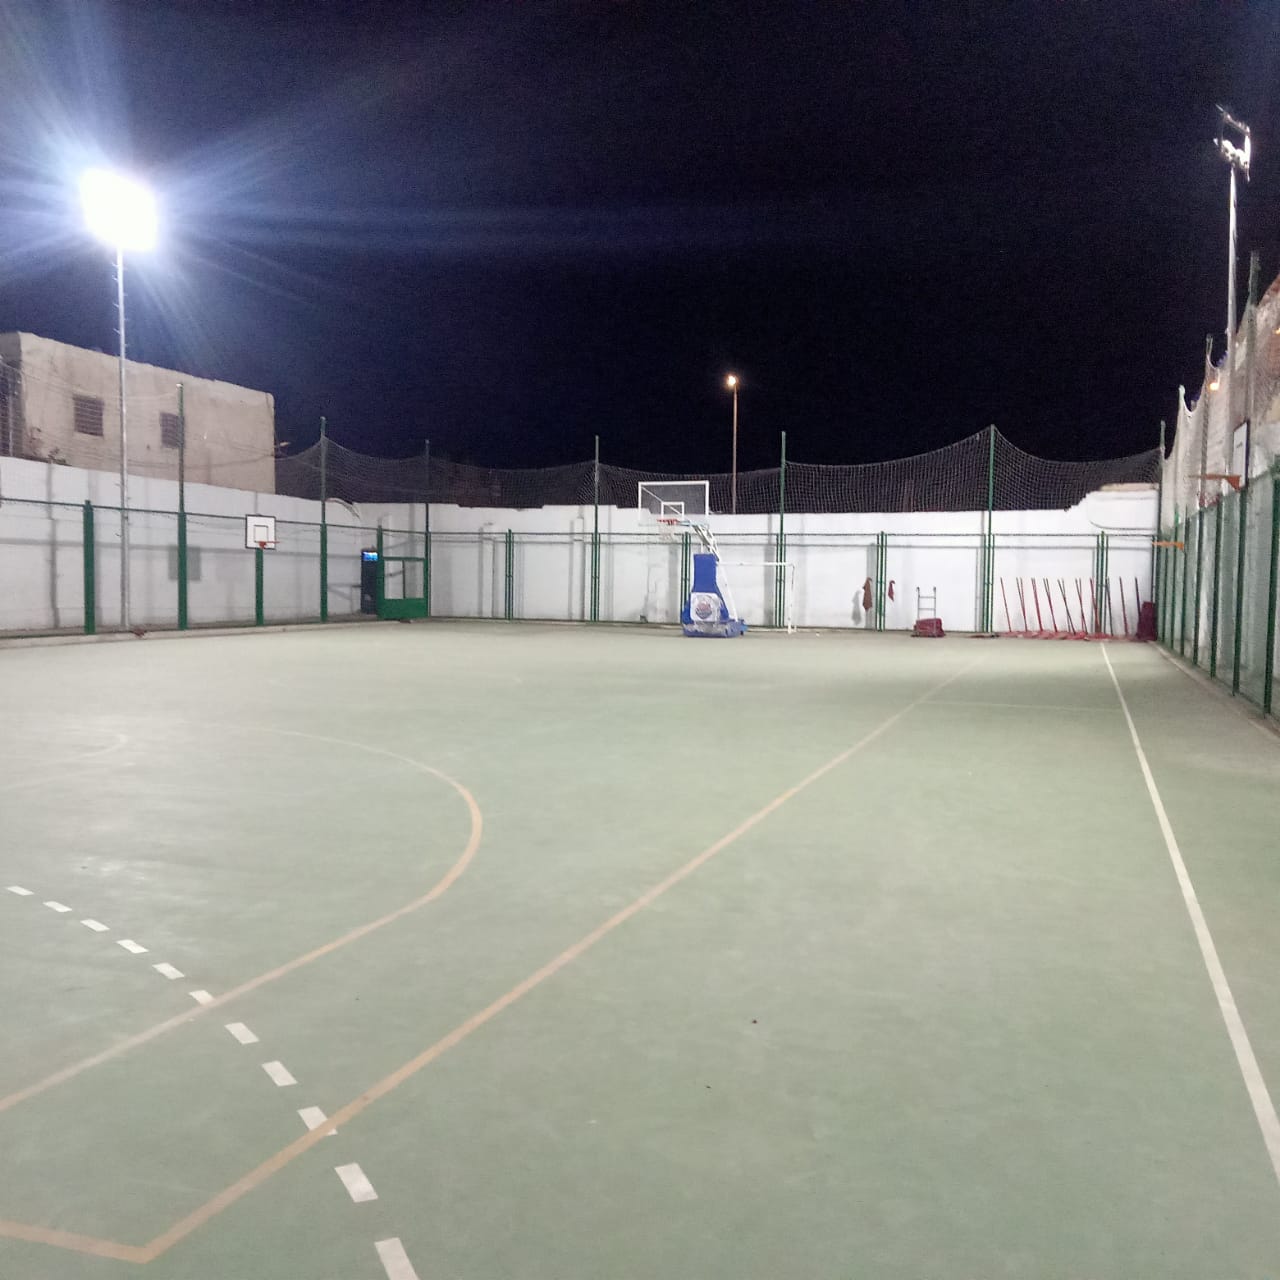 الملعب الخماسي الذي تدربت به روان الحسيني لاعبة كرة السرعة شهيدة الغدر  قبل وفاتها بساعات قليلة